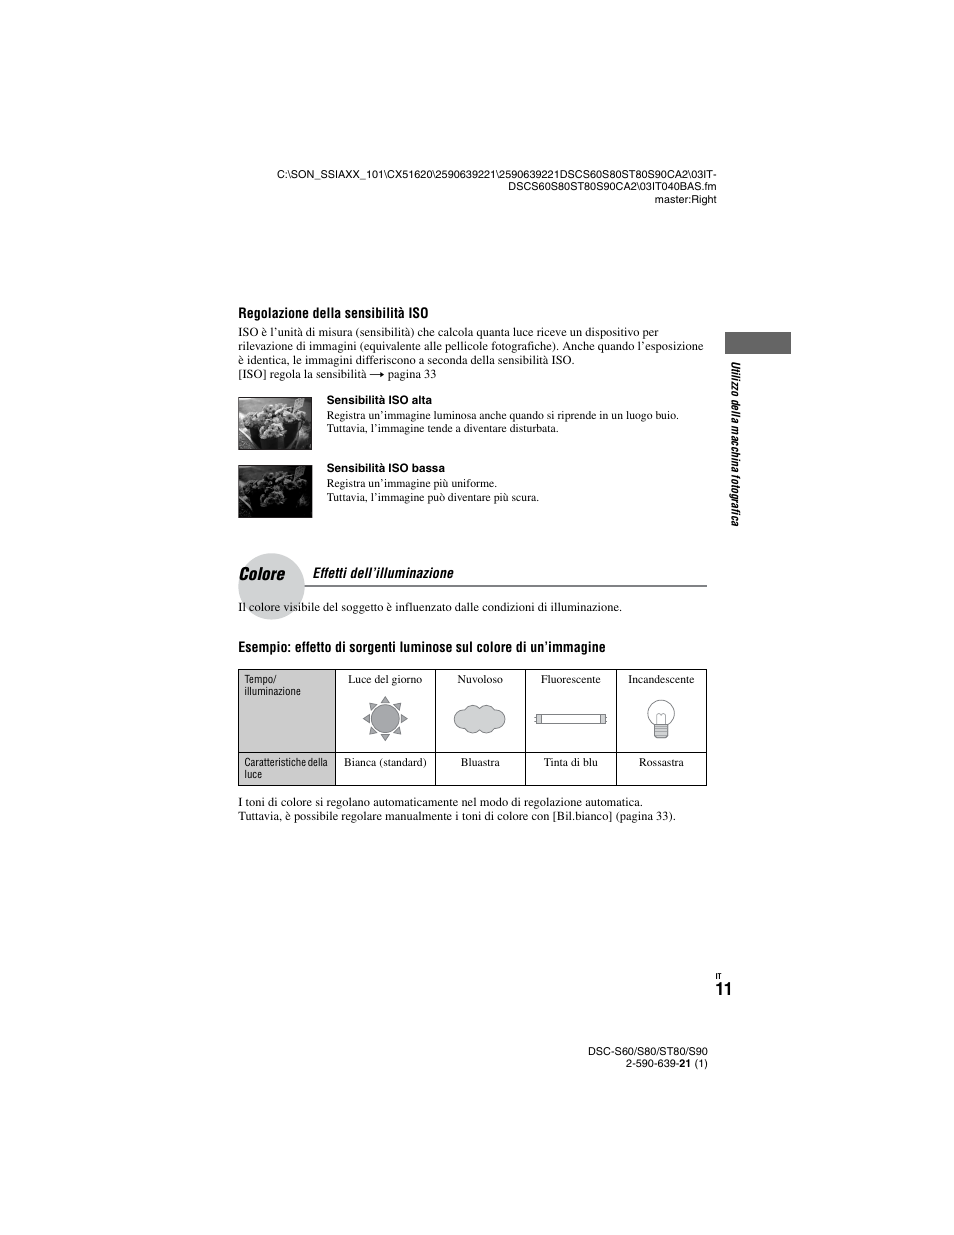 Colore, Effetti dell’illuminazione | Sony DSC-ST80 Manuale d'uso | Pagina 113 / 207